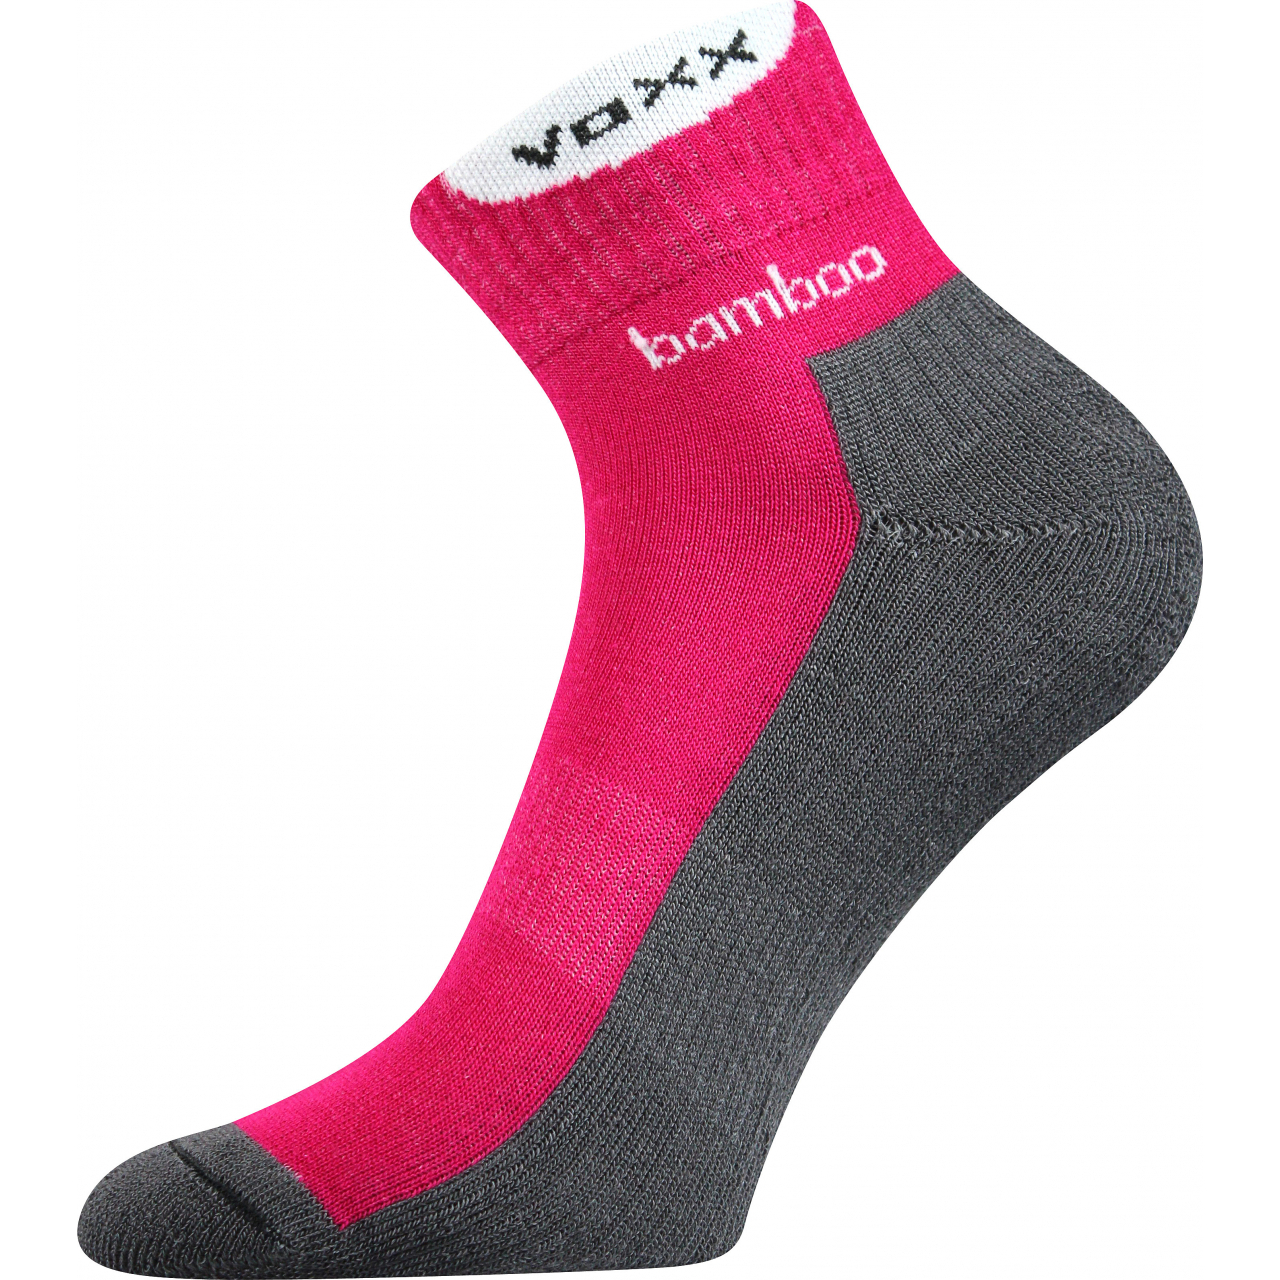 Ponožky bambusové sportovní Voxx Brooke - tmavě růžové-šedé, 39-42